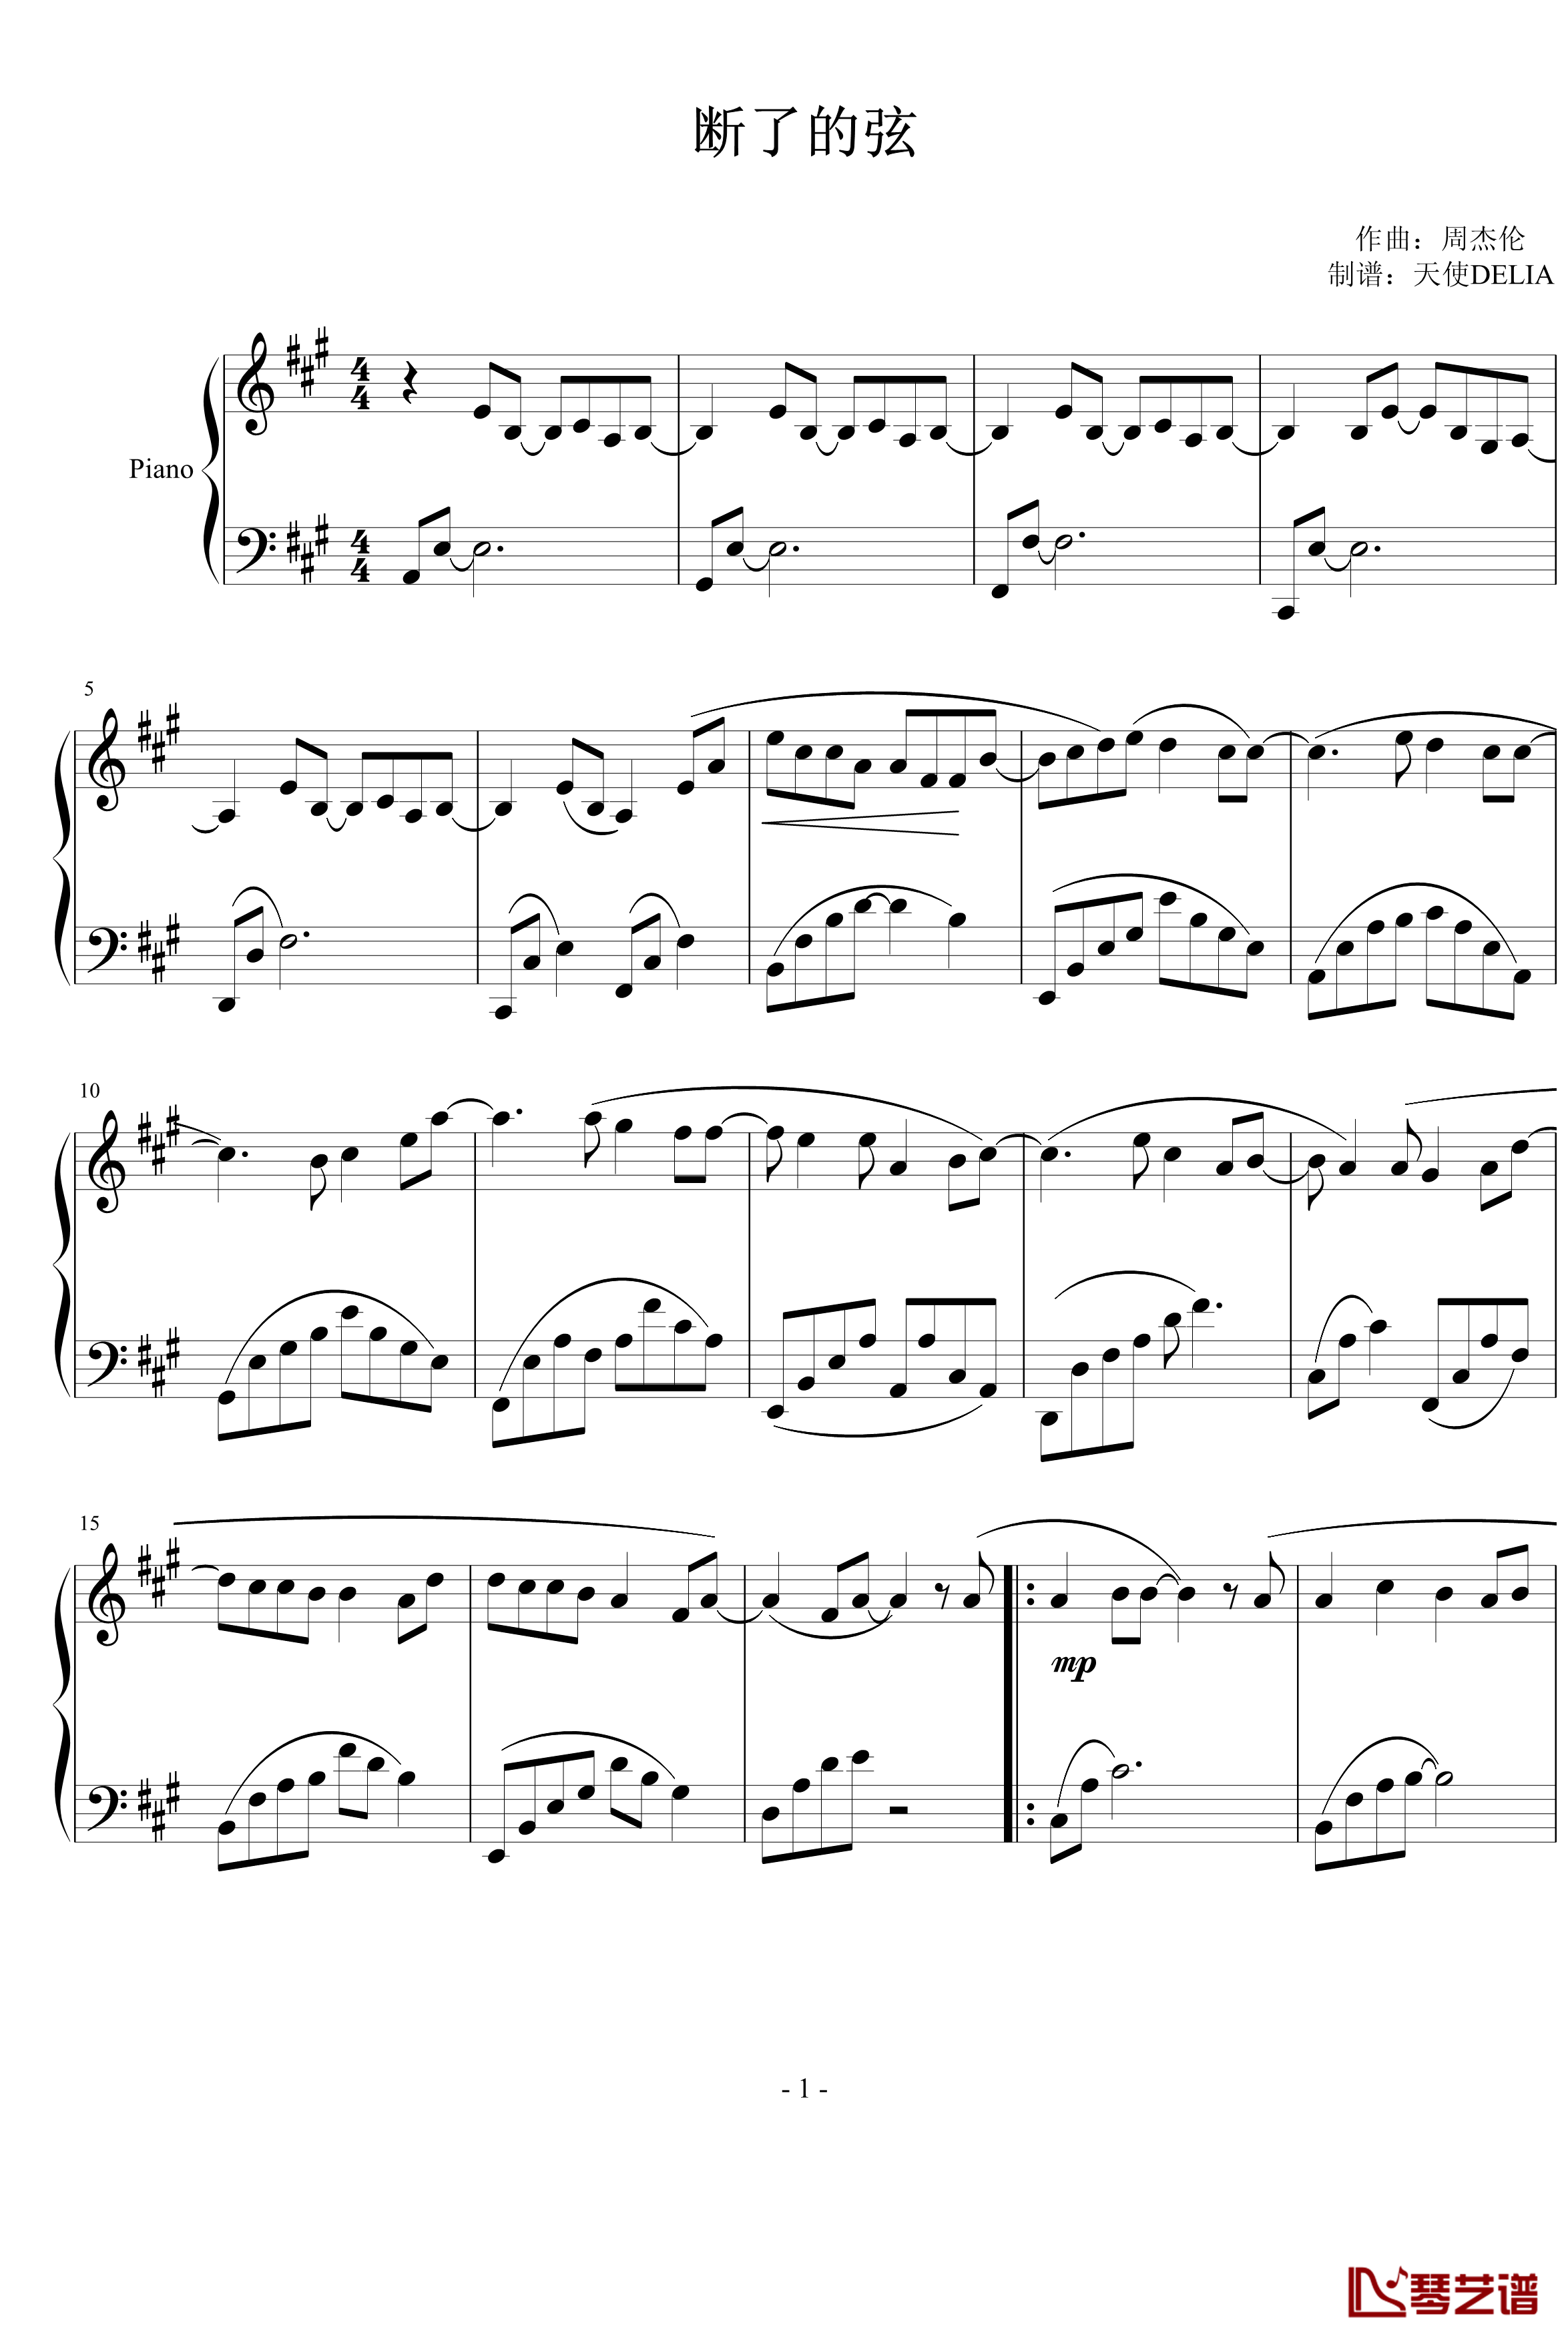 断了的弦钢琴谱-演奏版-周杰伦1